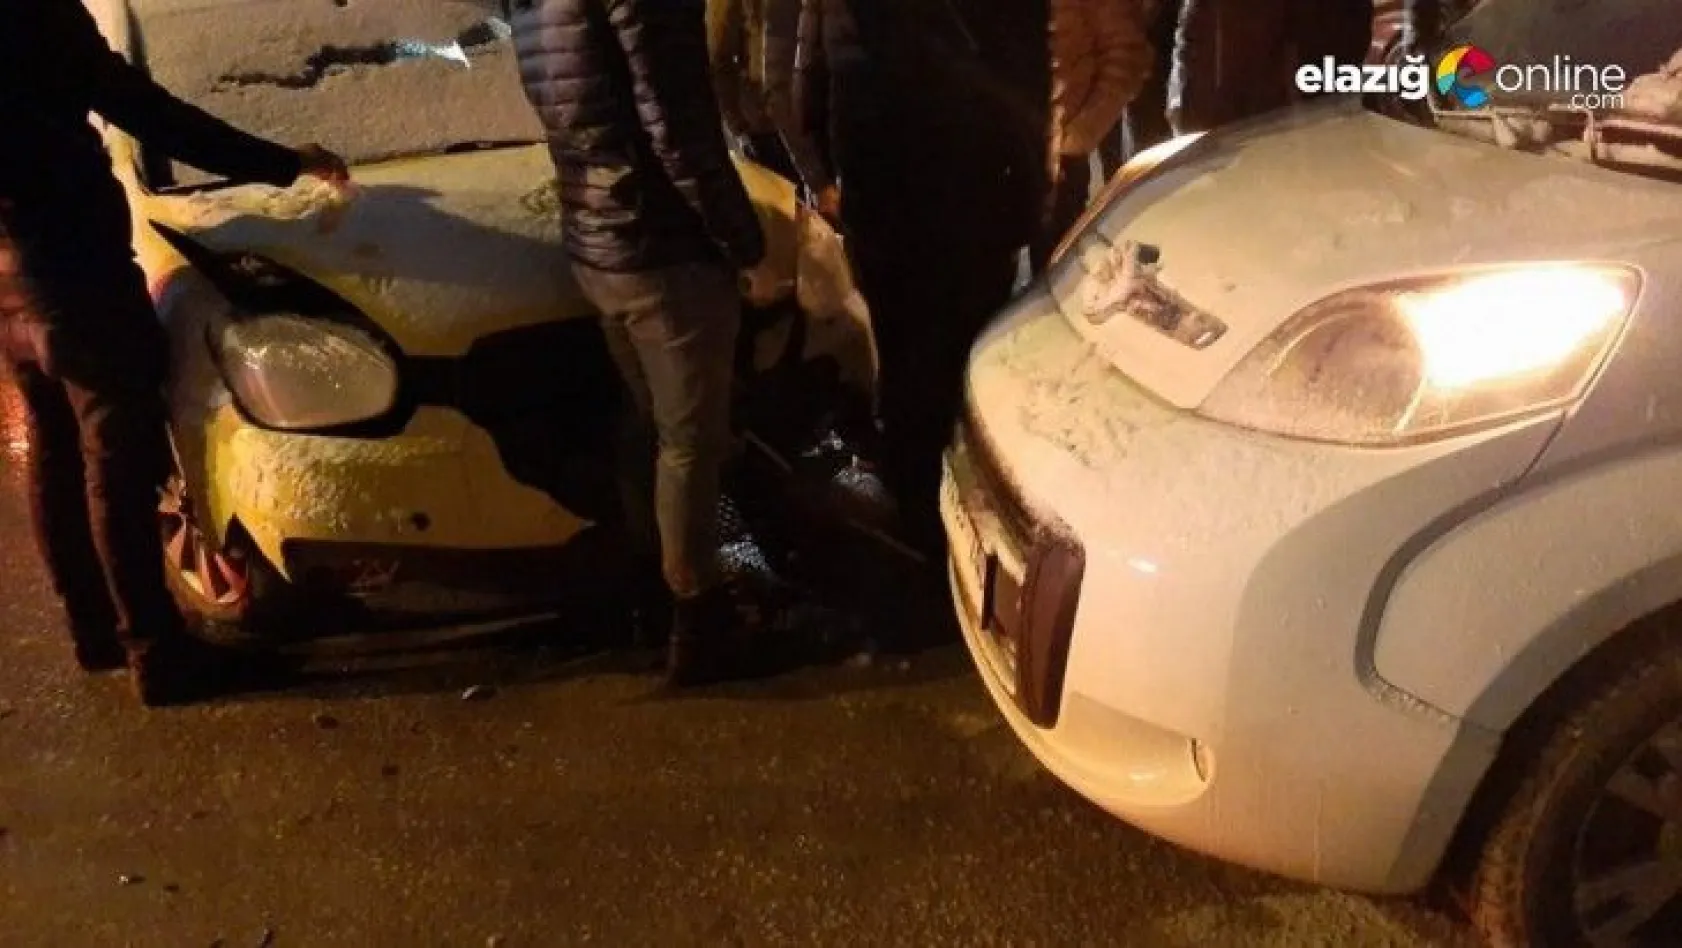 Elazığ Ataşehir Mahallesi'nde trafik kazası